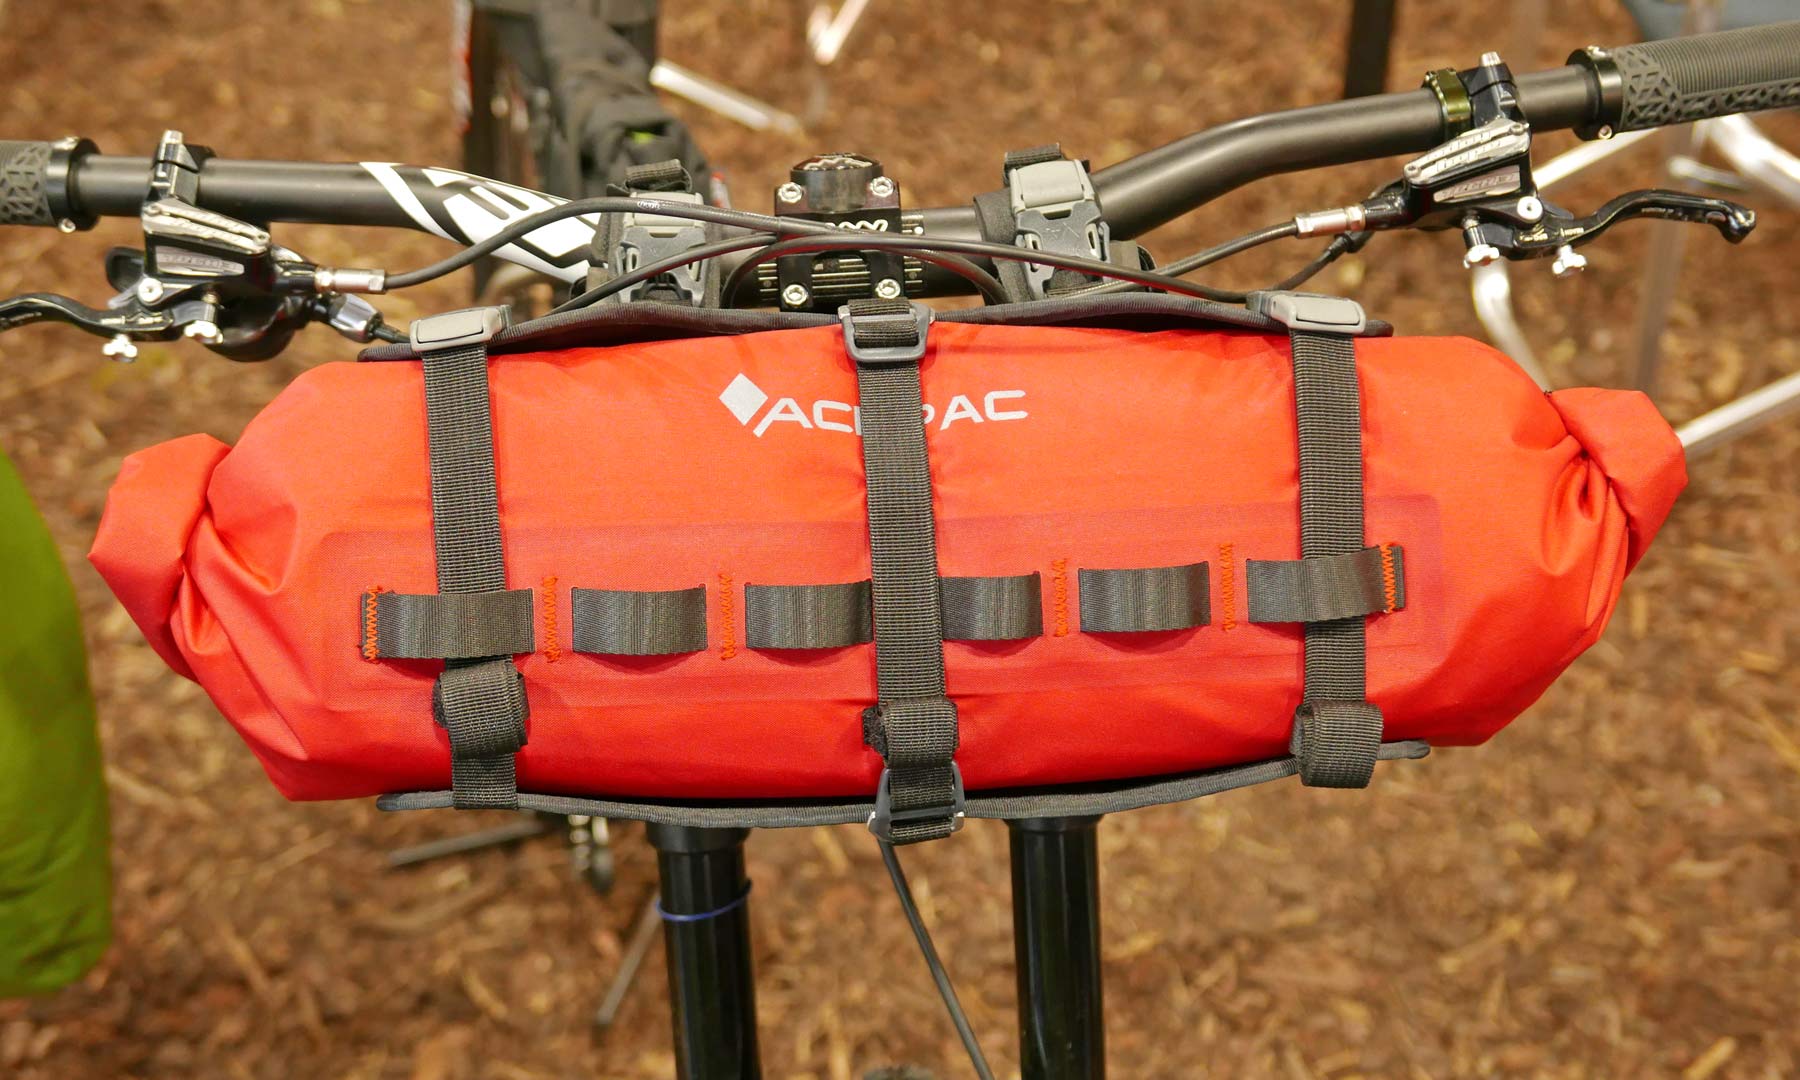 Adverteerder Pef Paradox EB18: Acepac packs your bikepacking adventure gear with smart details -  Bikerumor